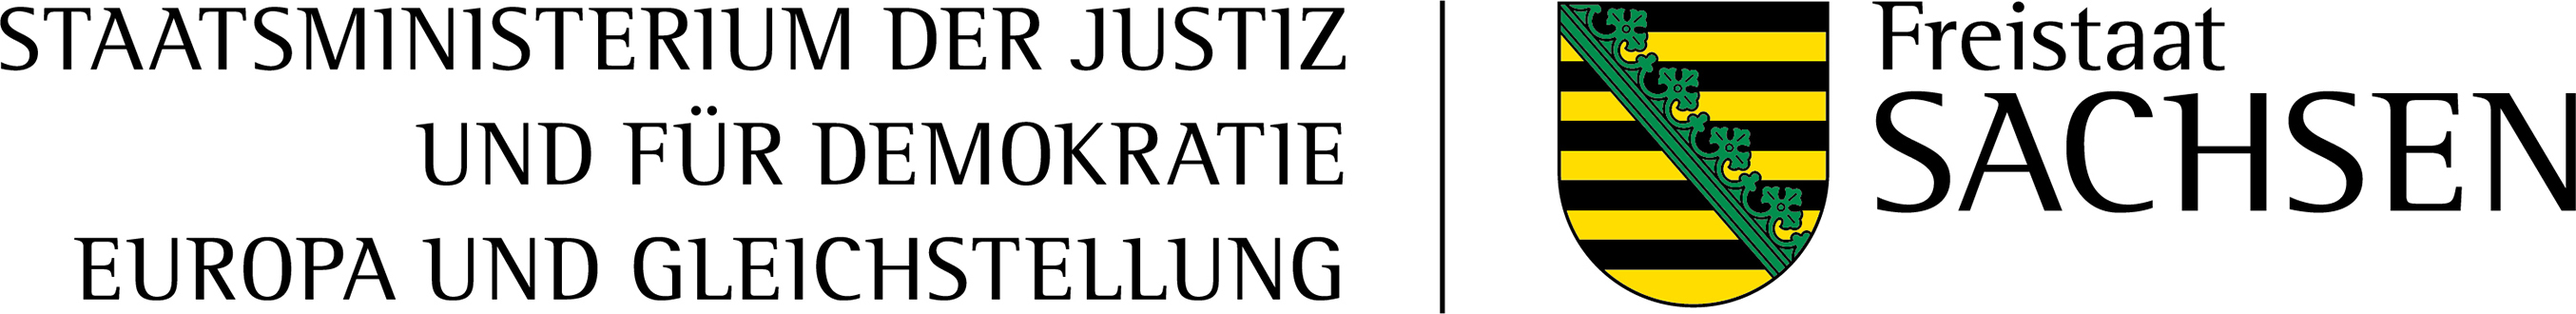 Logo Sächsisches Staatsministerium der Justiz und für Demokratie, Europa und Gleichstellung